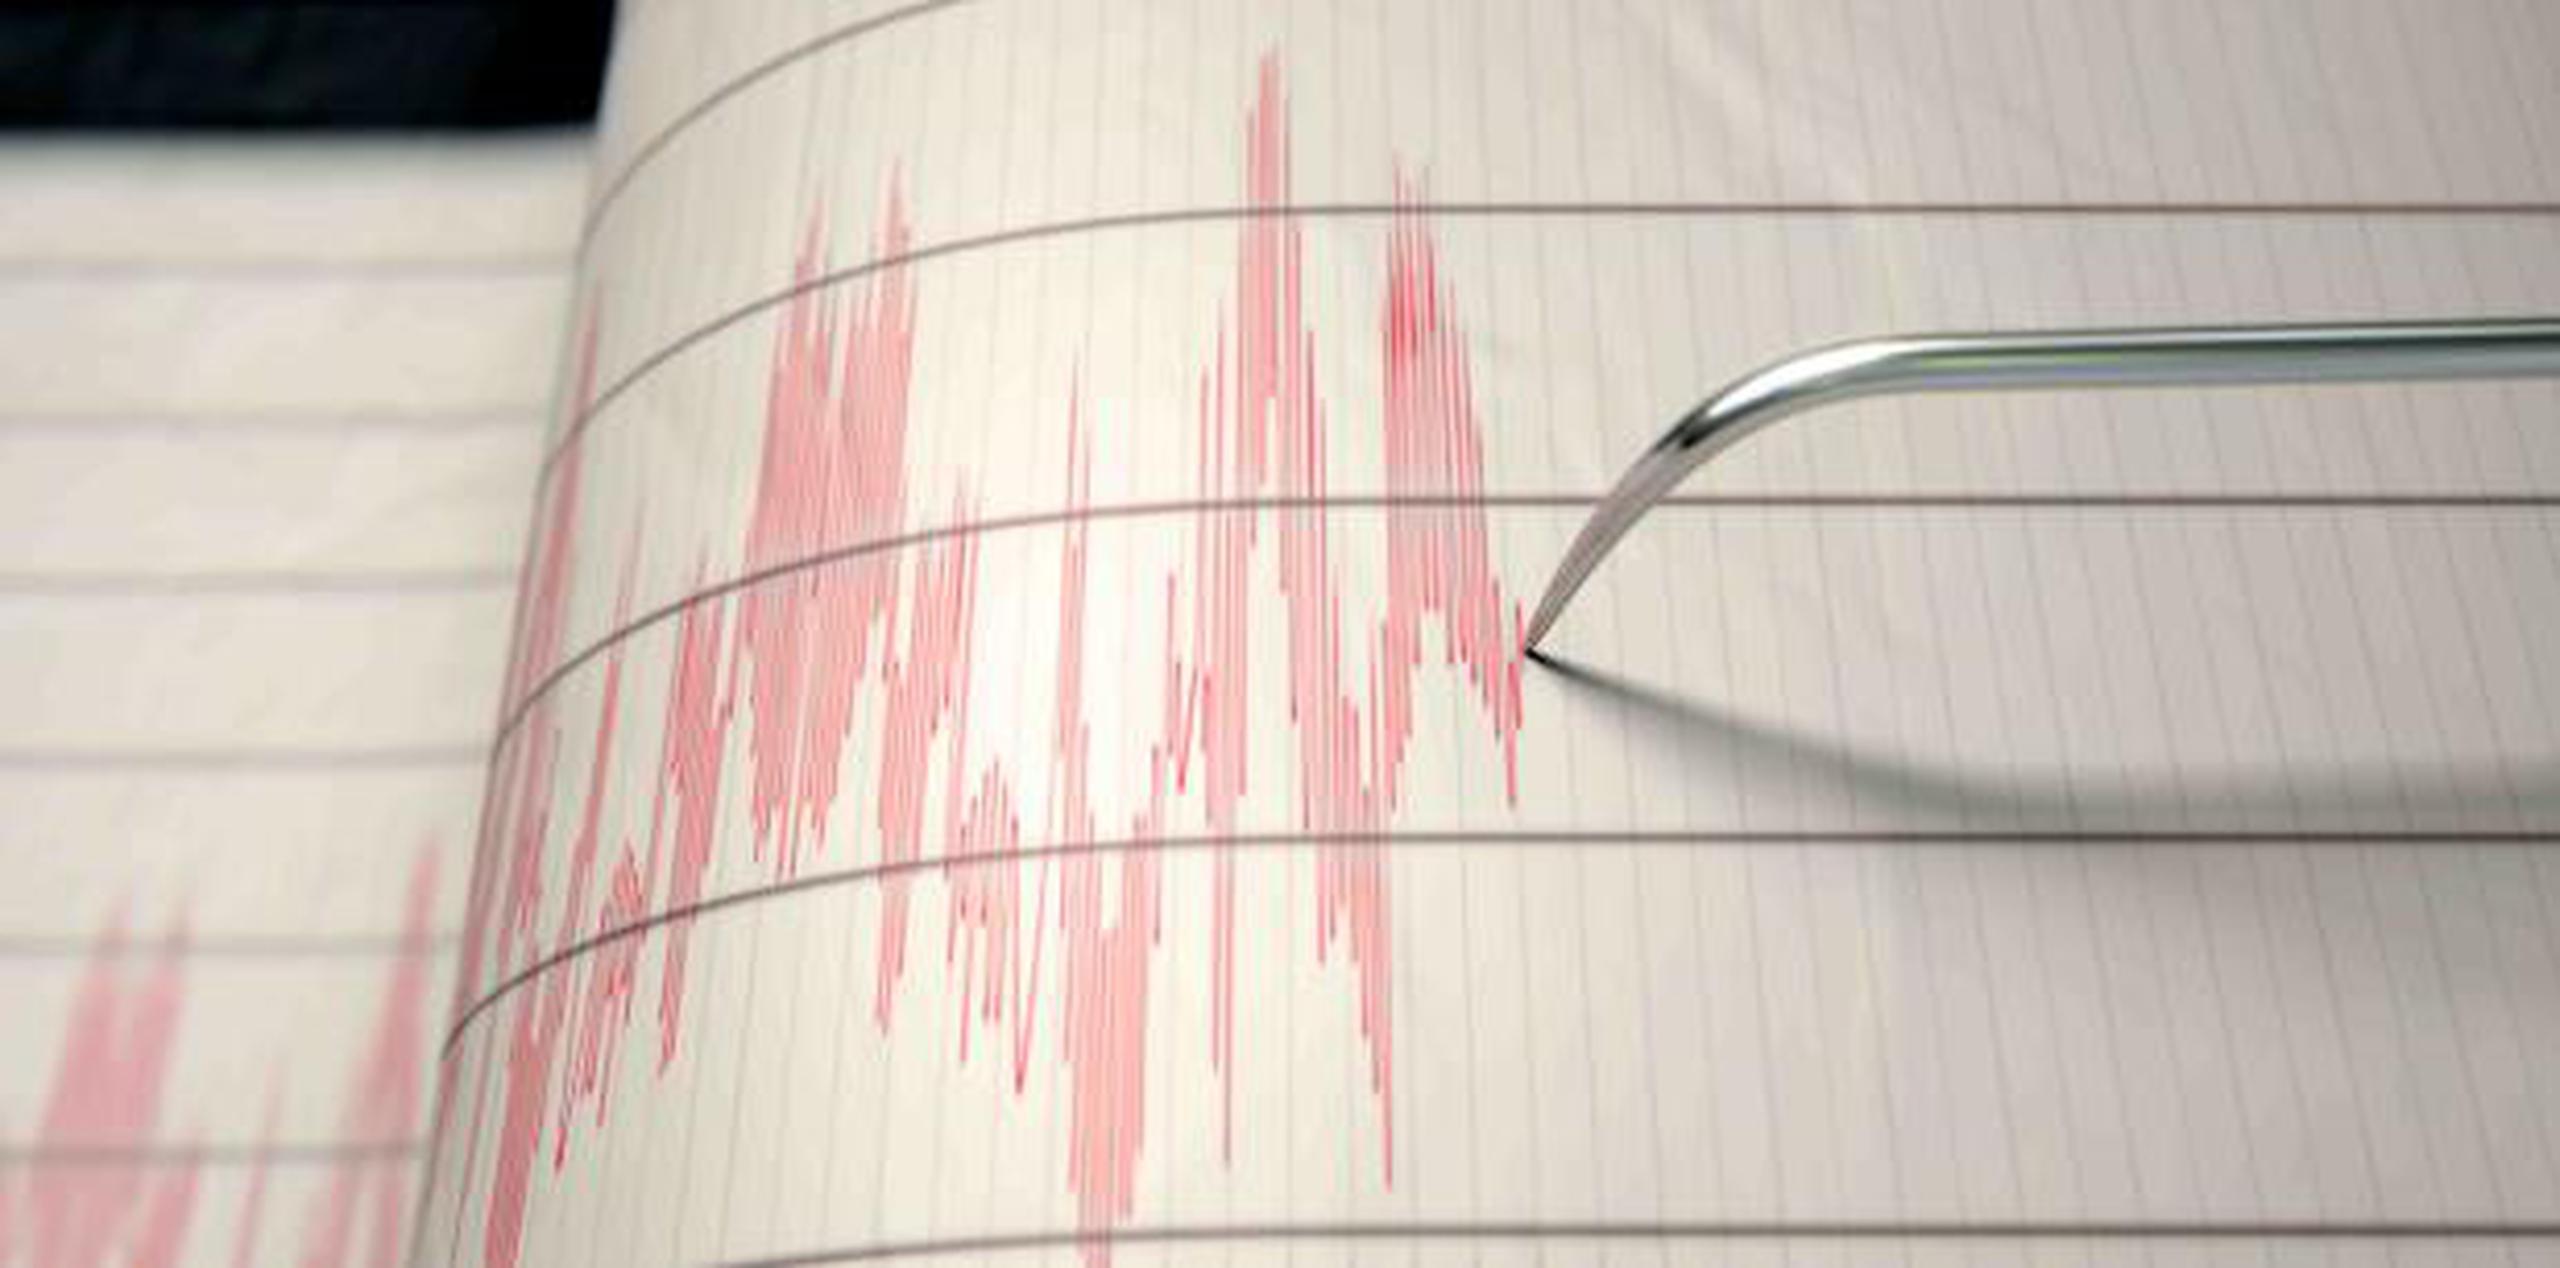 Irán se ubica en una importante falla geológica y registra sismos casi a diario. (Archivo)